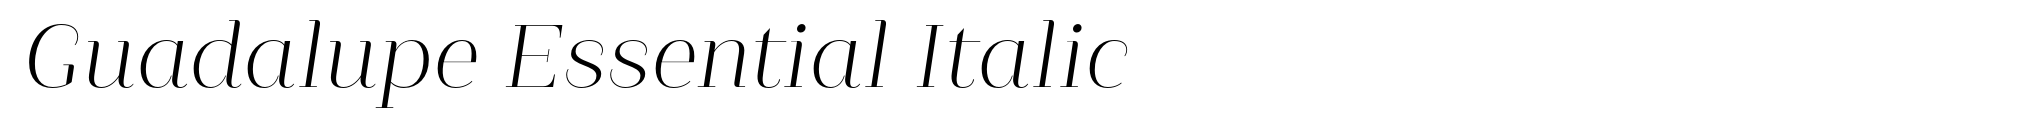 Guadalupe Essential Italic image